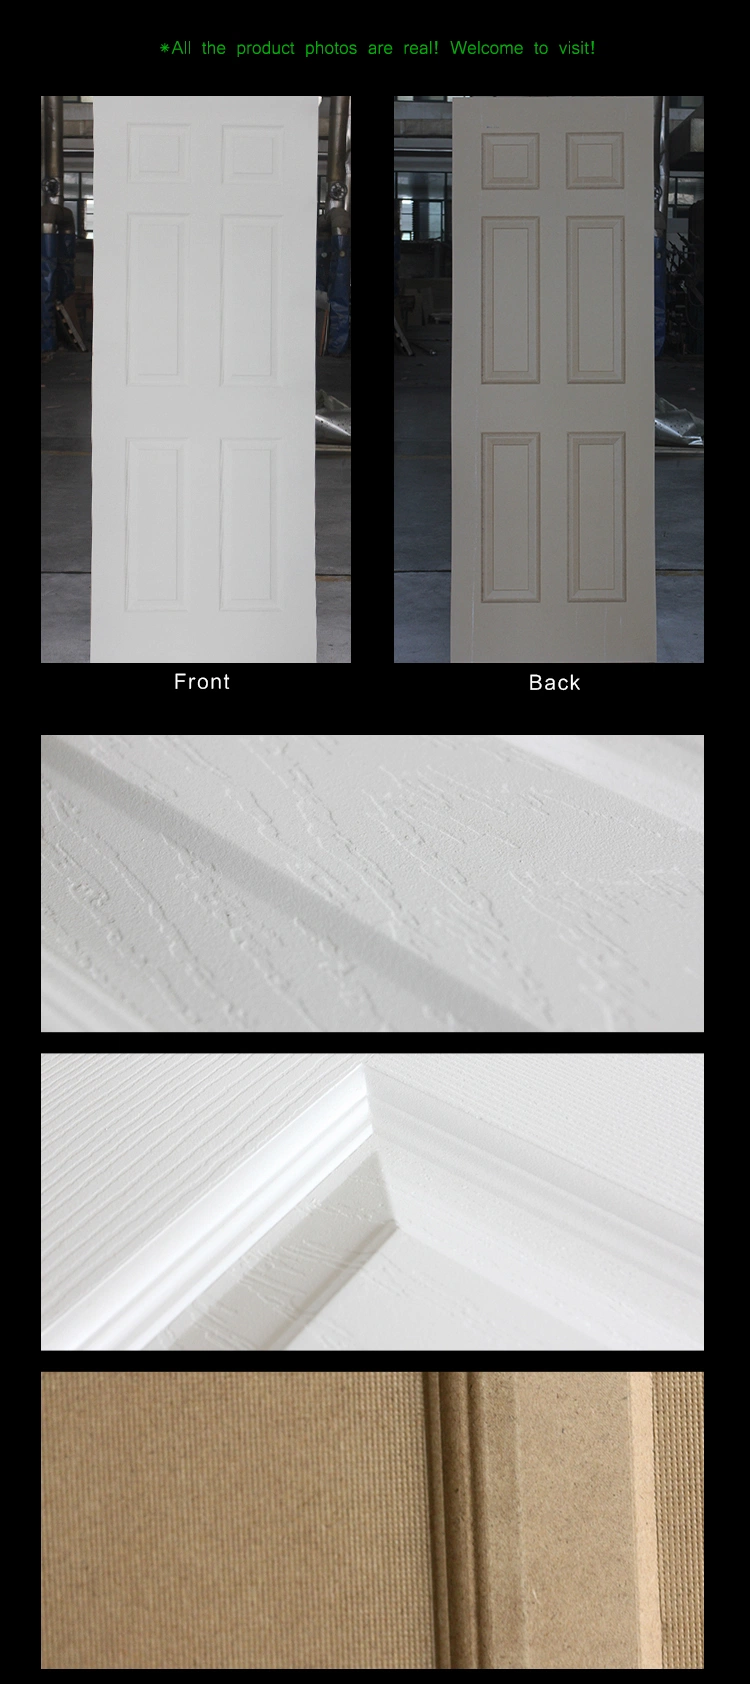 Jhk MDF Board Moulded Plywood White Primer Molded Door Skin